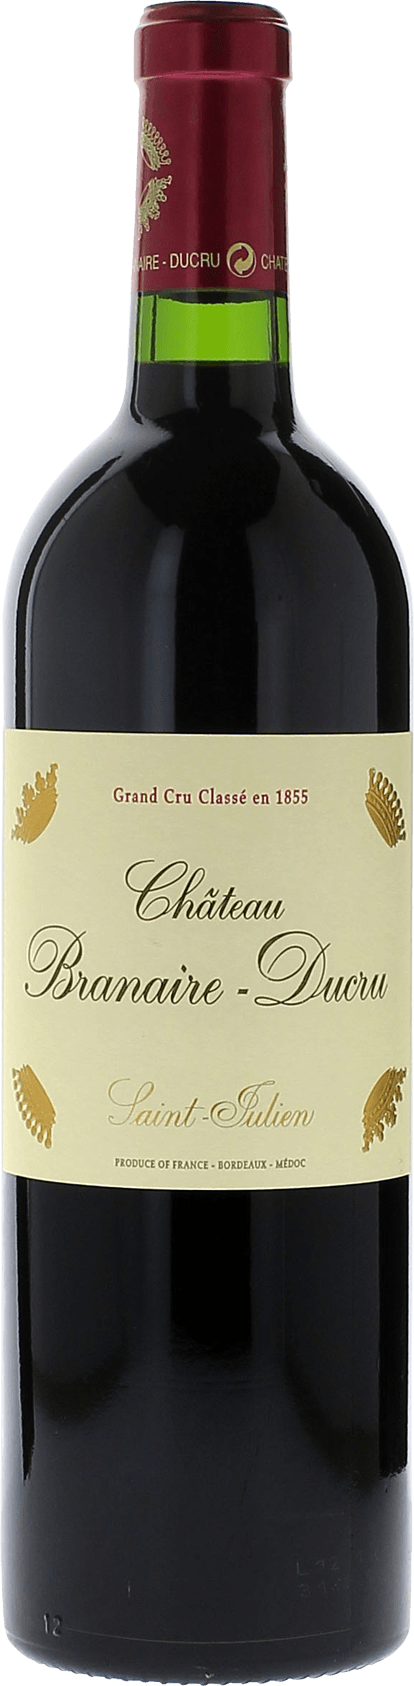 Branaire ducru 1995 4me Grand cru class Saint-Julien, Bordeaux rouge